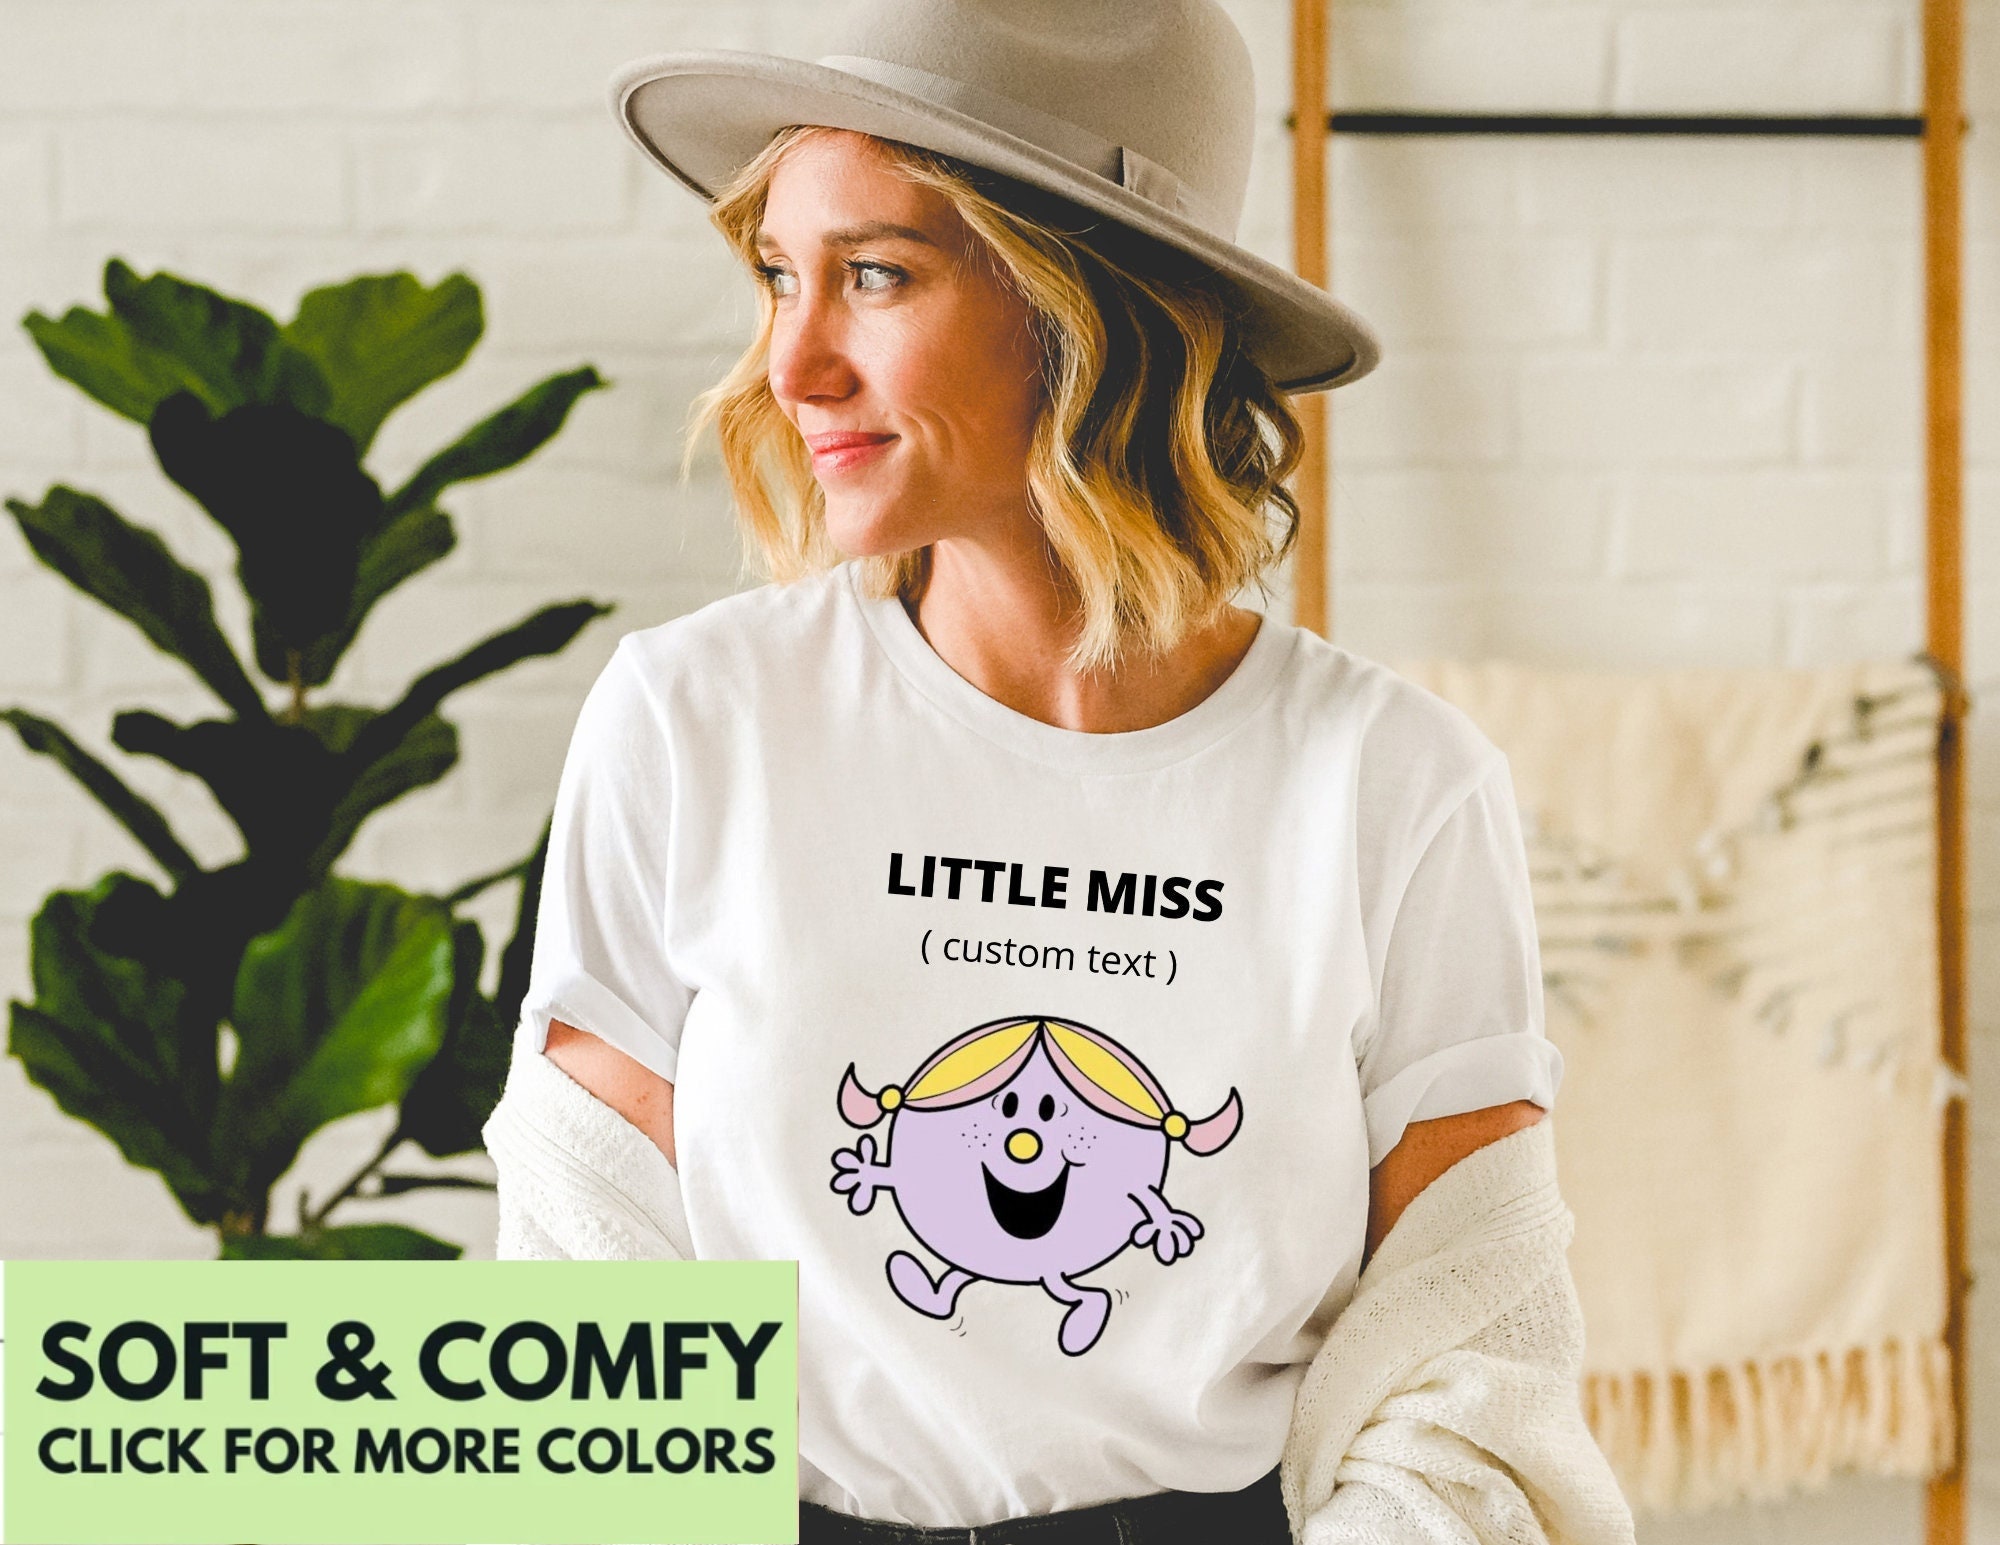 Discover Custom Shirt, Little Miss Shirt, Little Miss Custom Shirt, Mr. Men Inspired Shirt